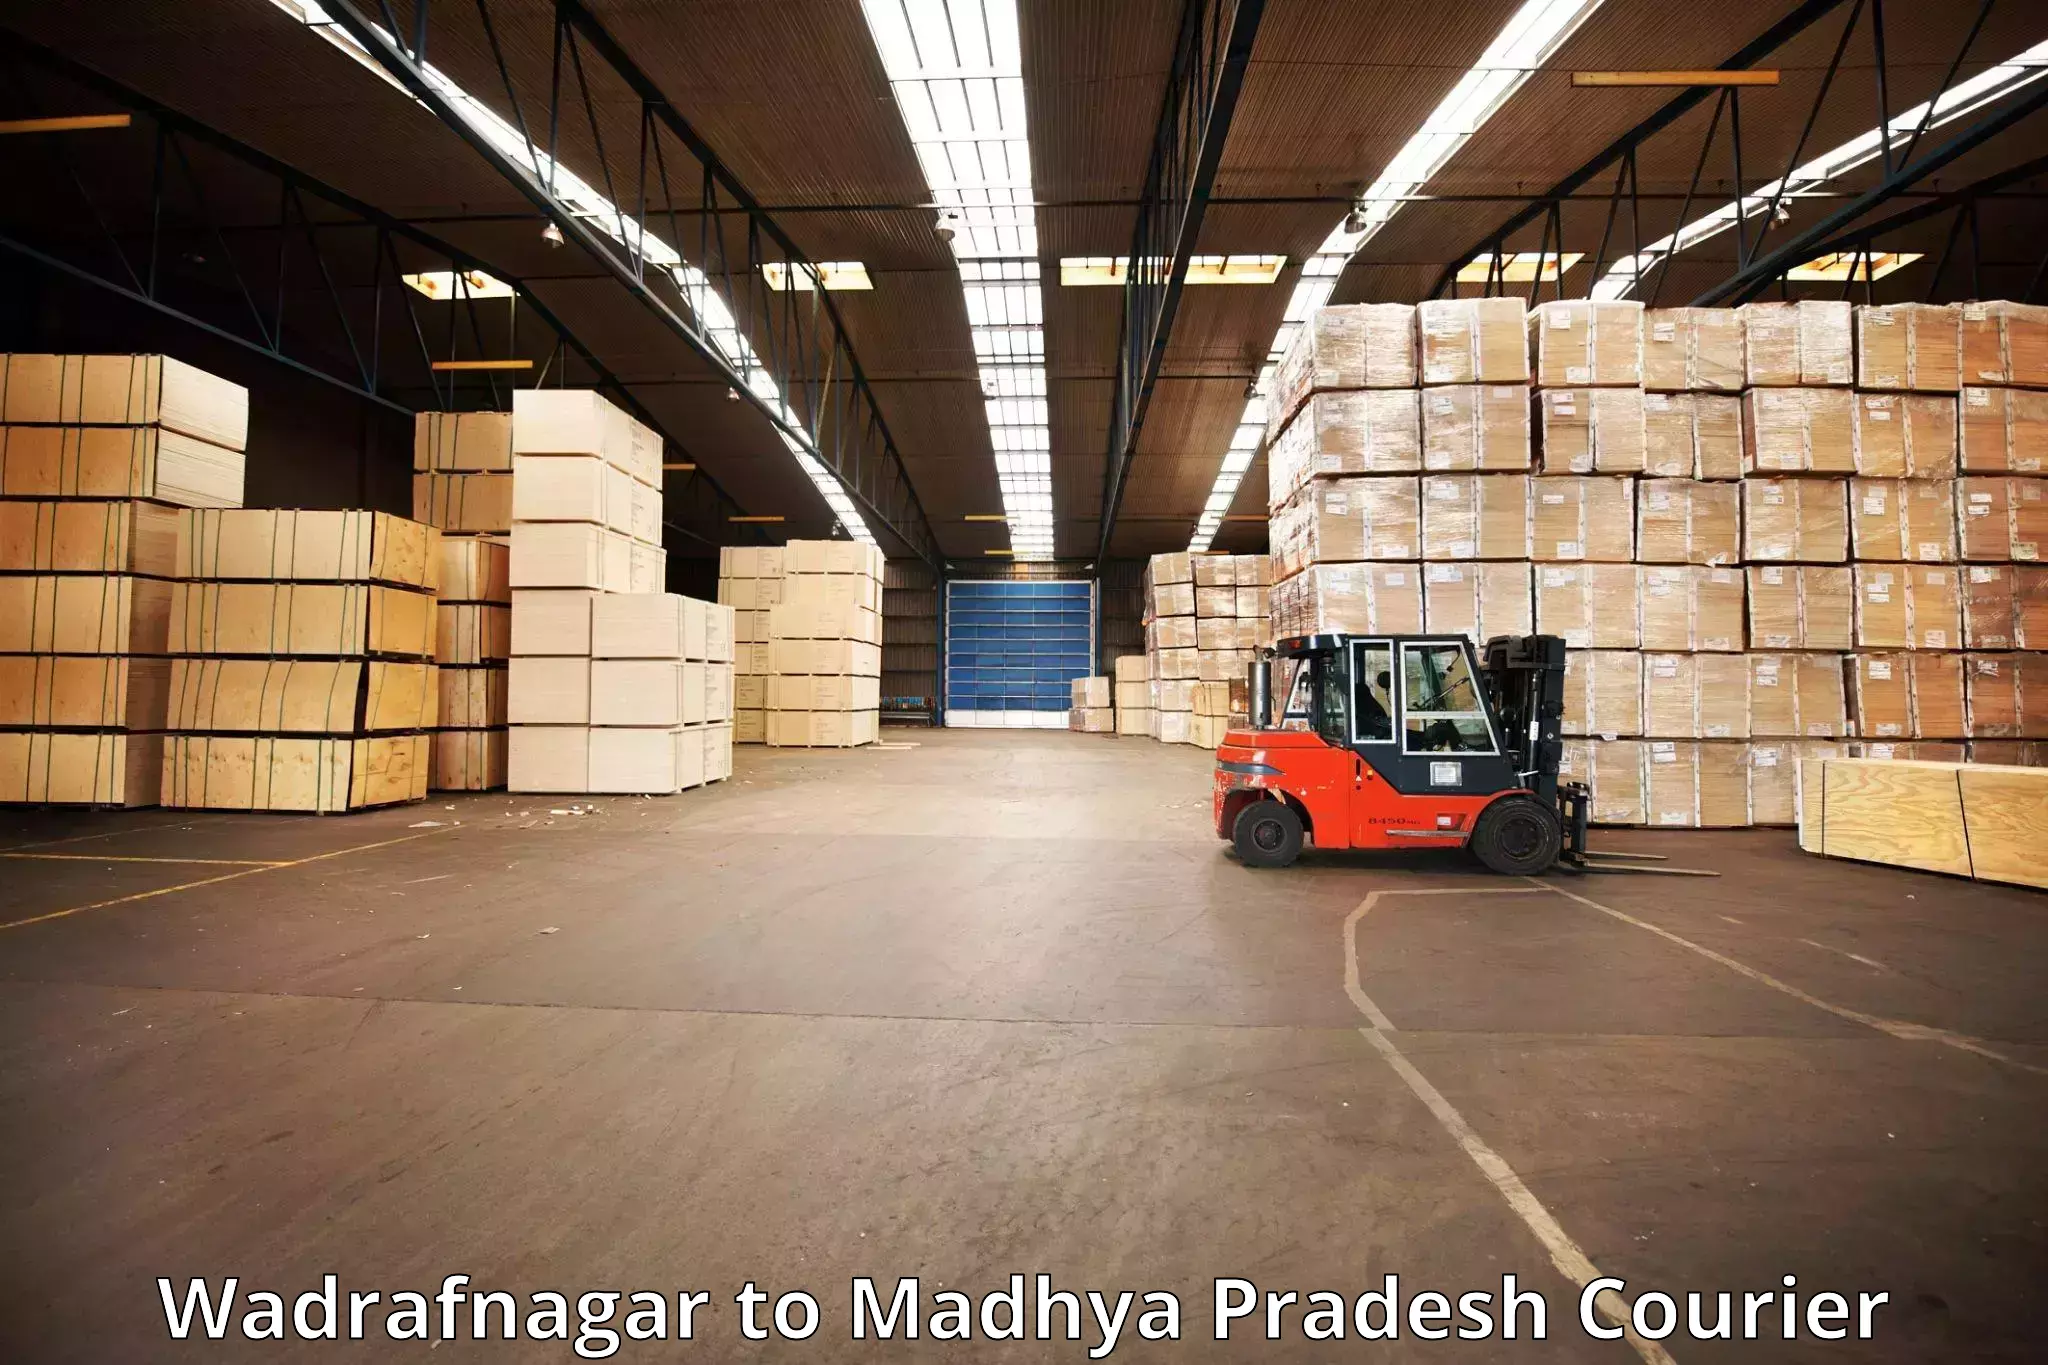 Light baggage courier Wadrafnagar to Begumganj